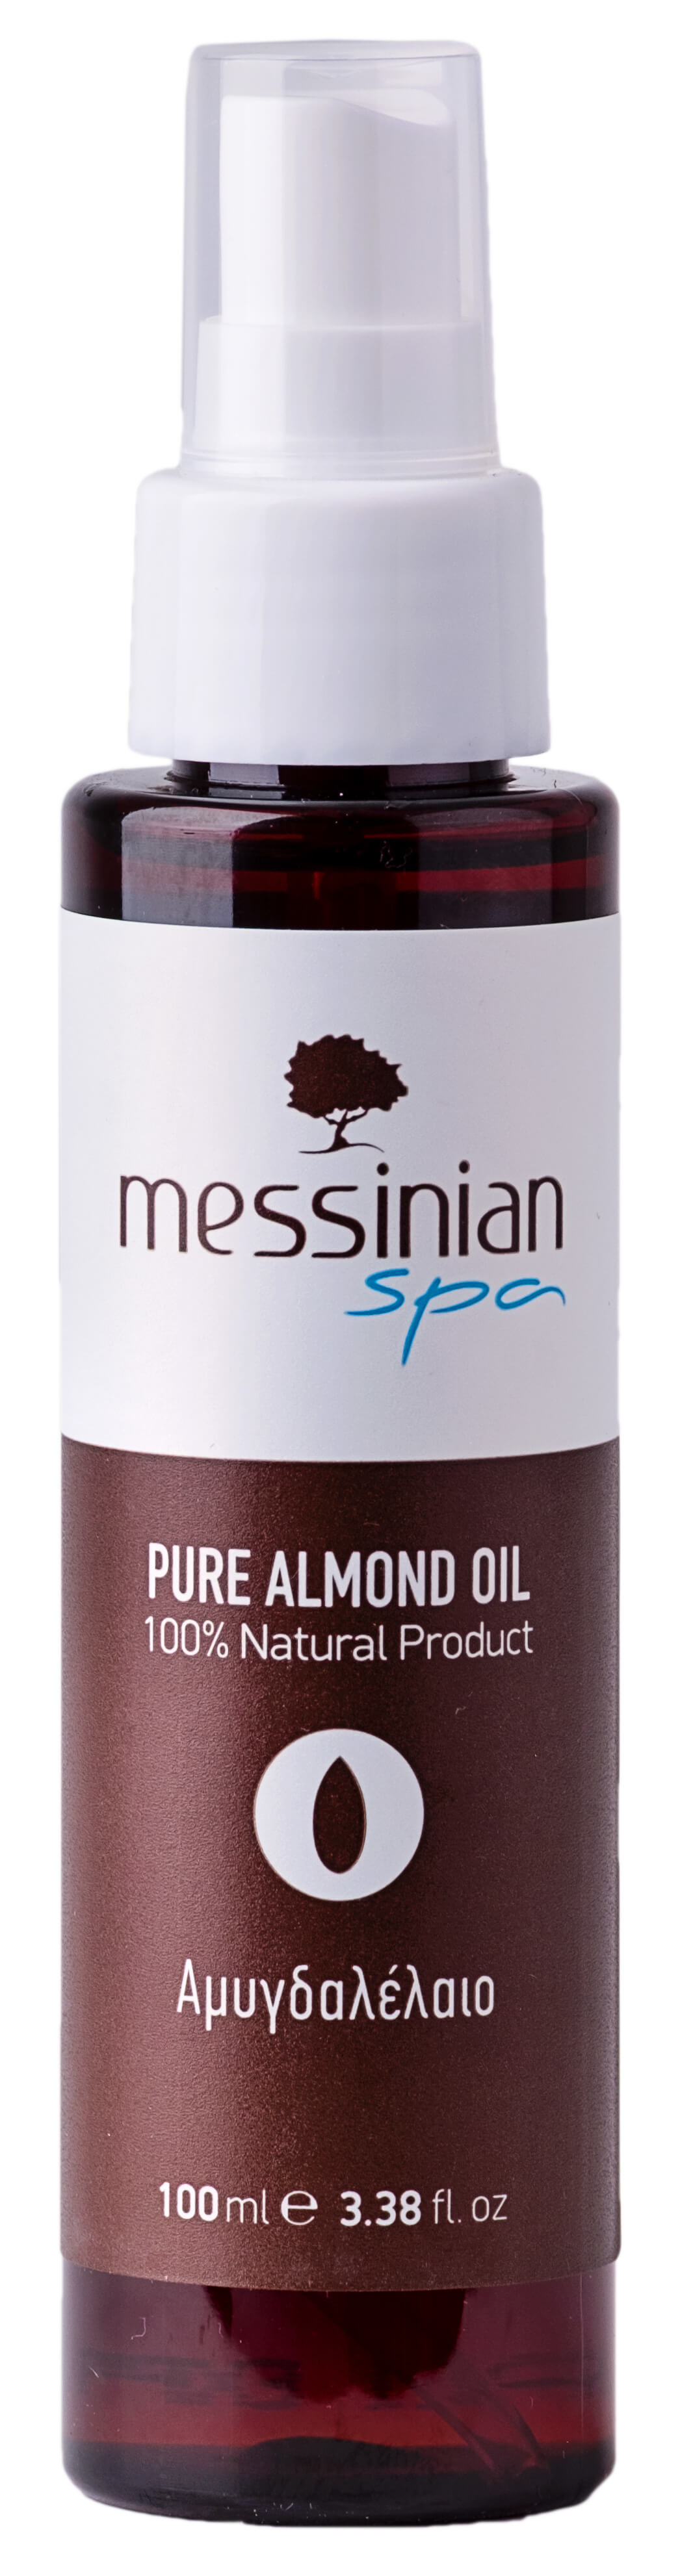 Zobrazit detail výrobku Messinian Spa Mandlový olej 100 ml + 2 měsíce na vrácení zboží